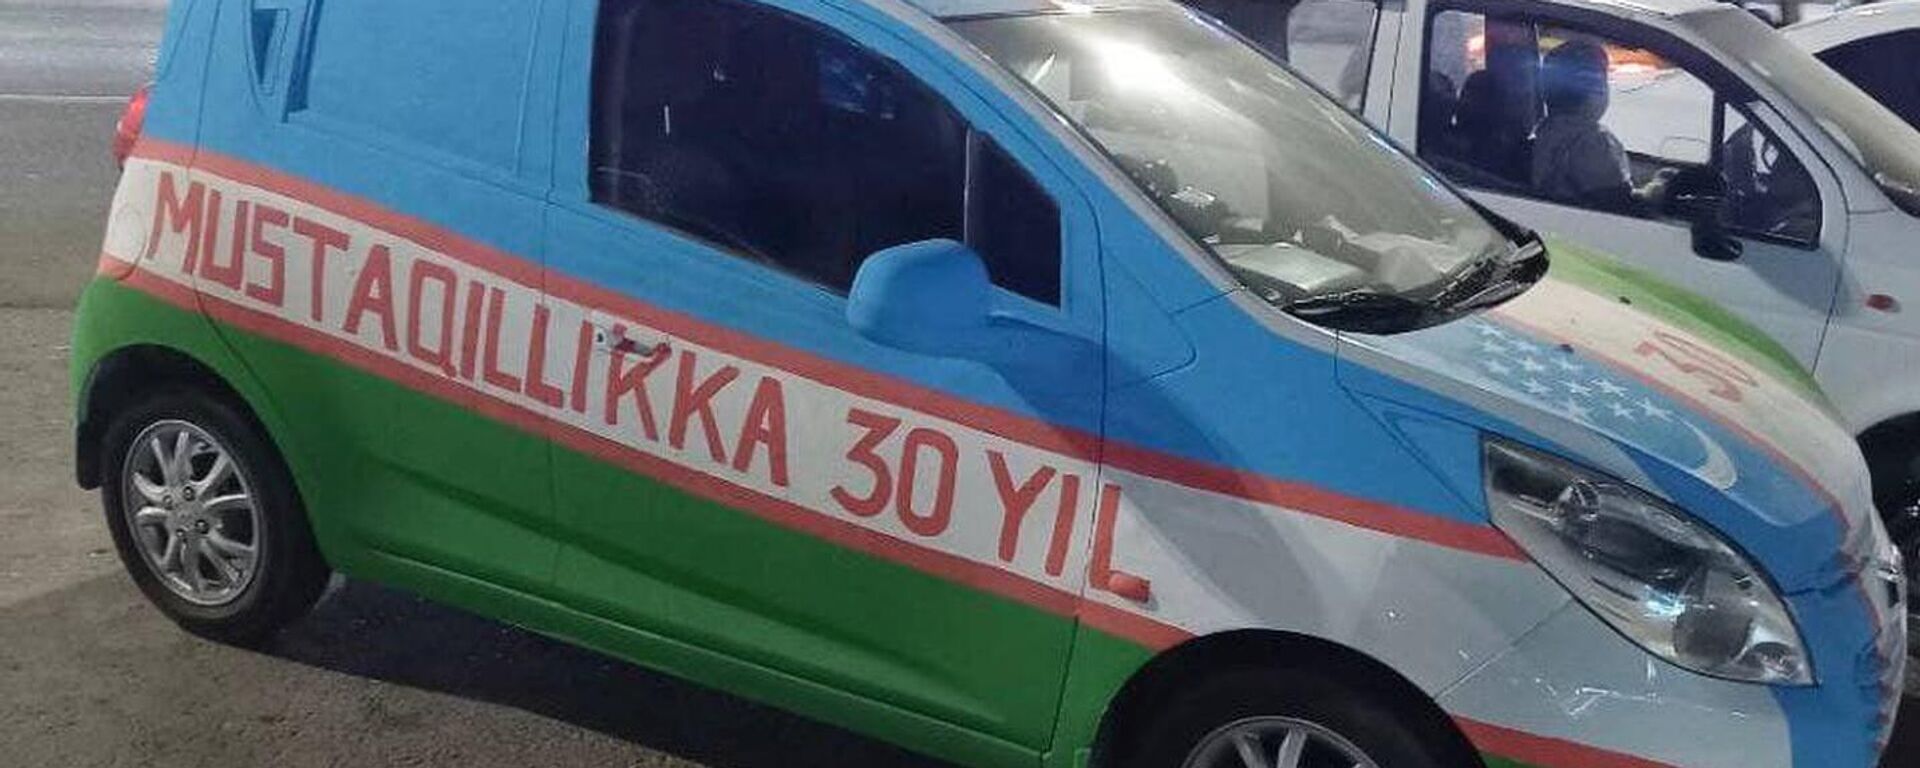 В Бухаре водители разрисовали авто в цвета государственного флага - Sputnik Узбекистан, 1920, 01.09.2021